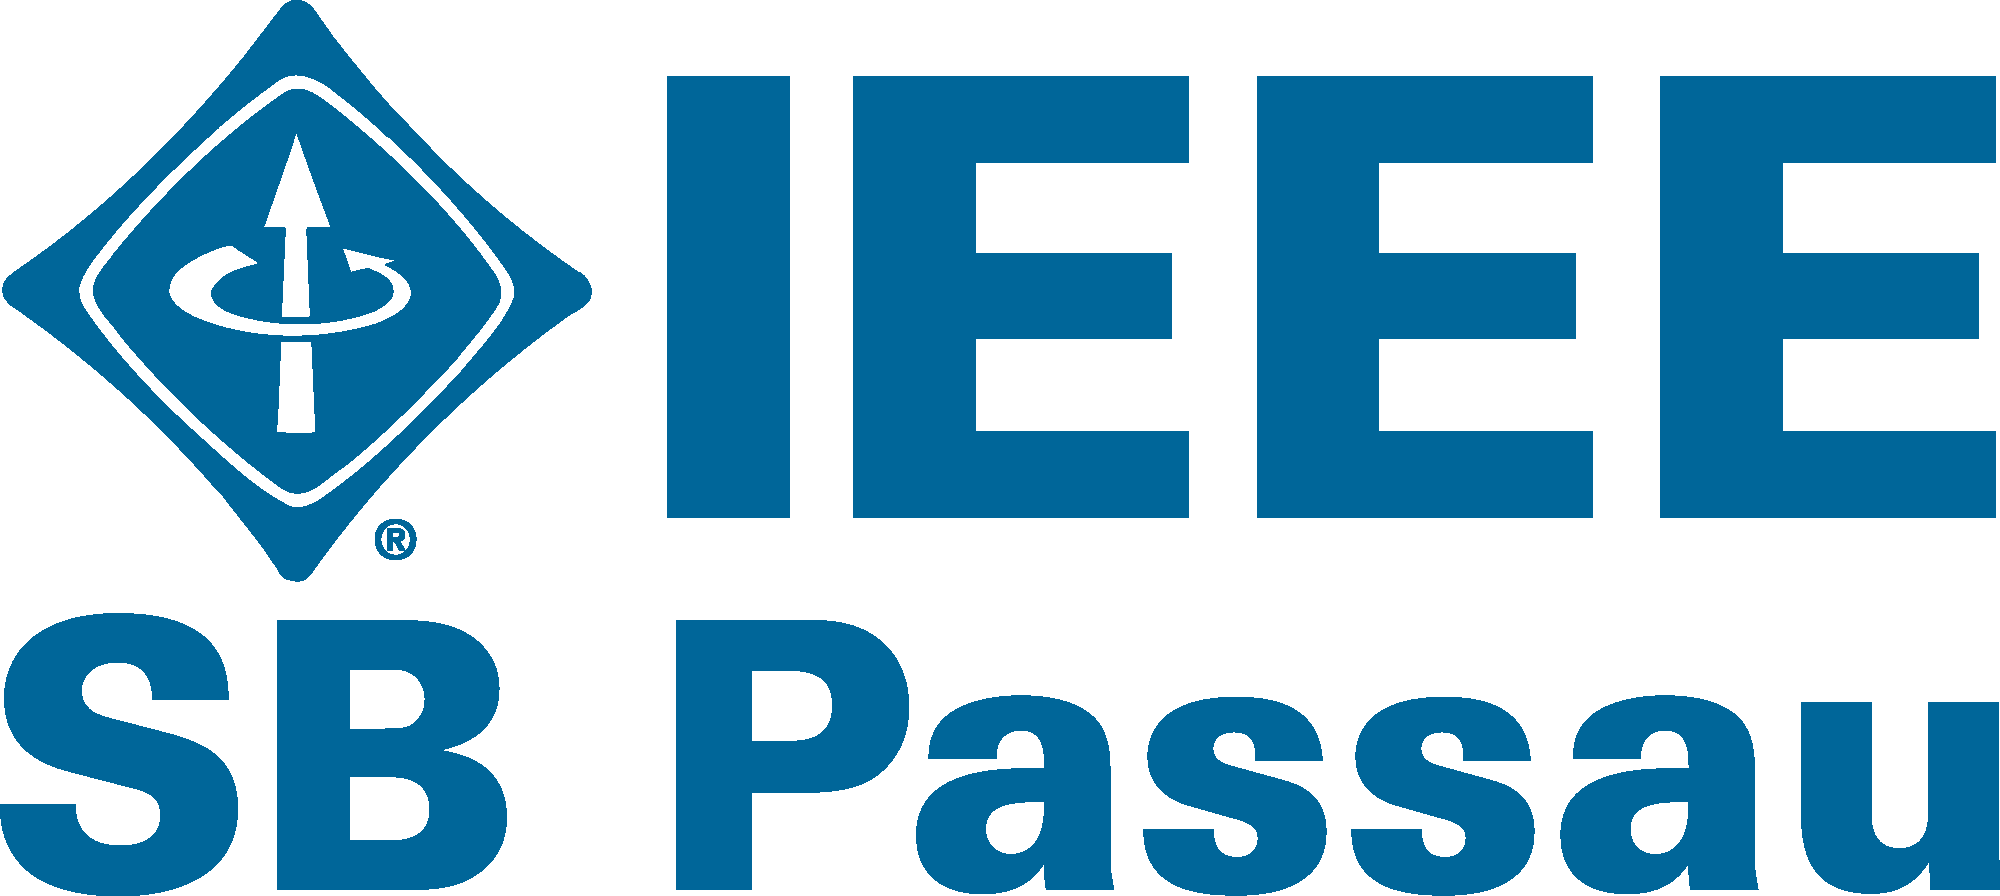 IEEE SB Passau